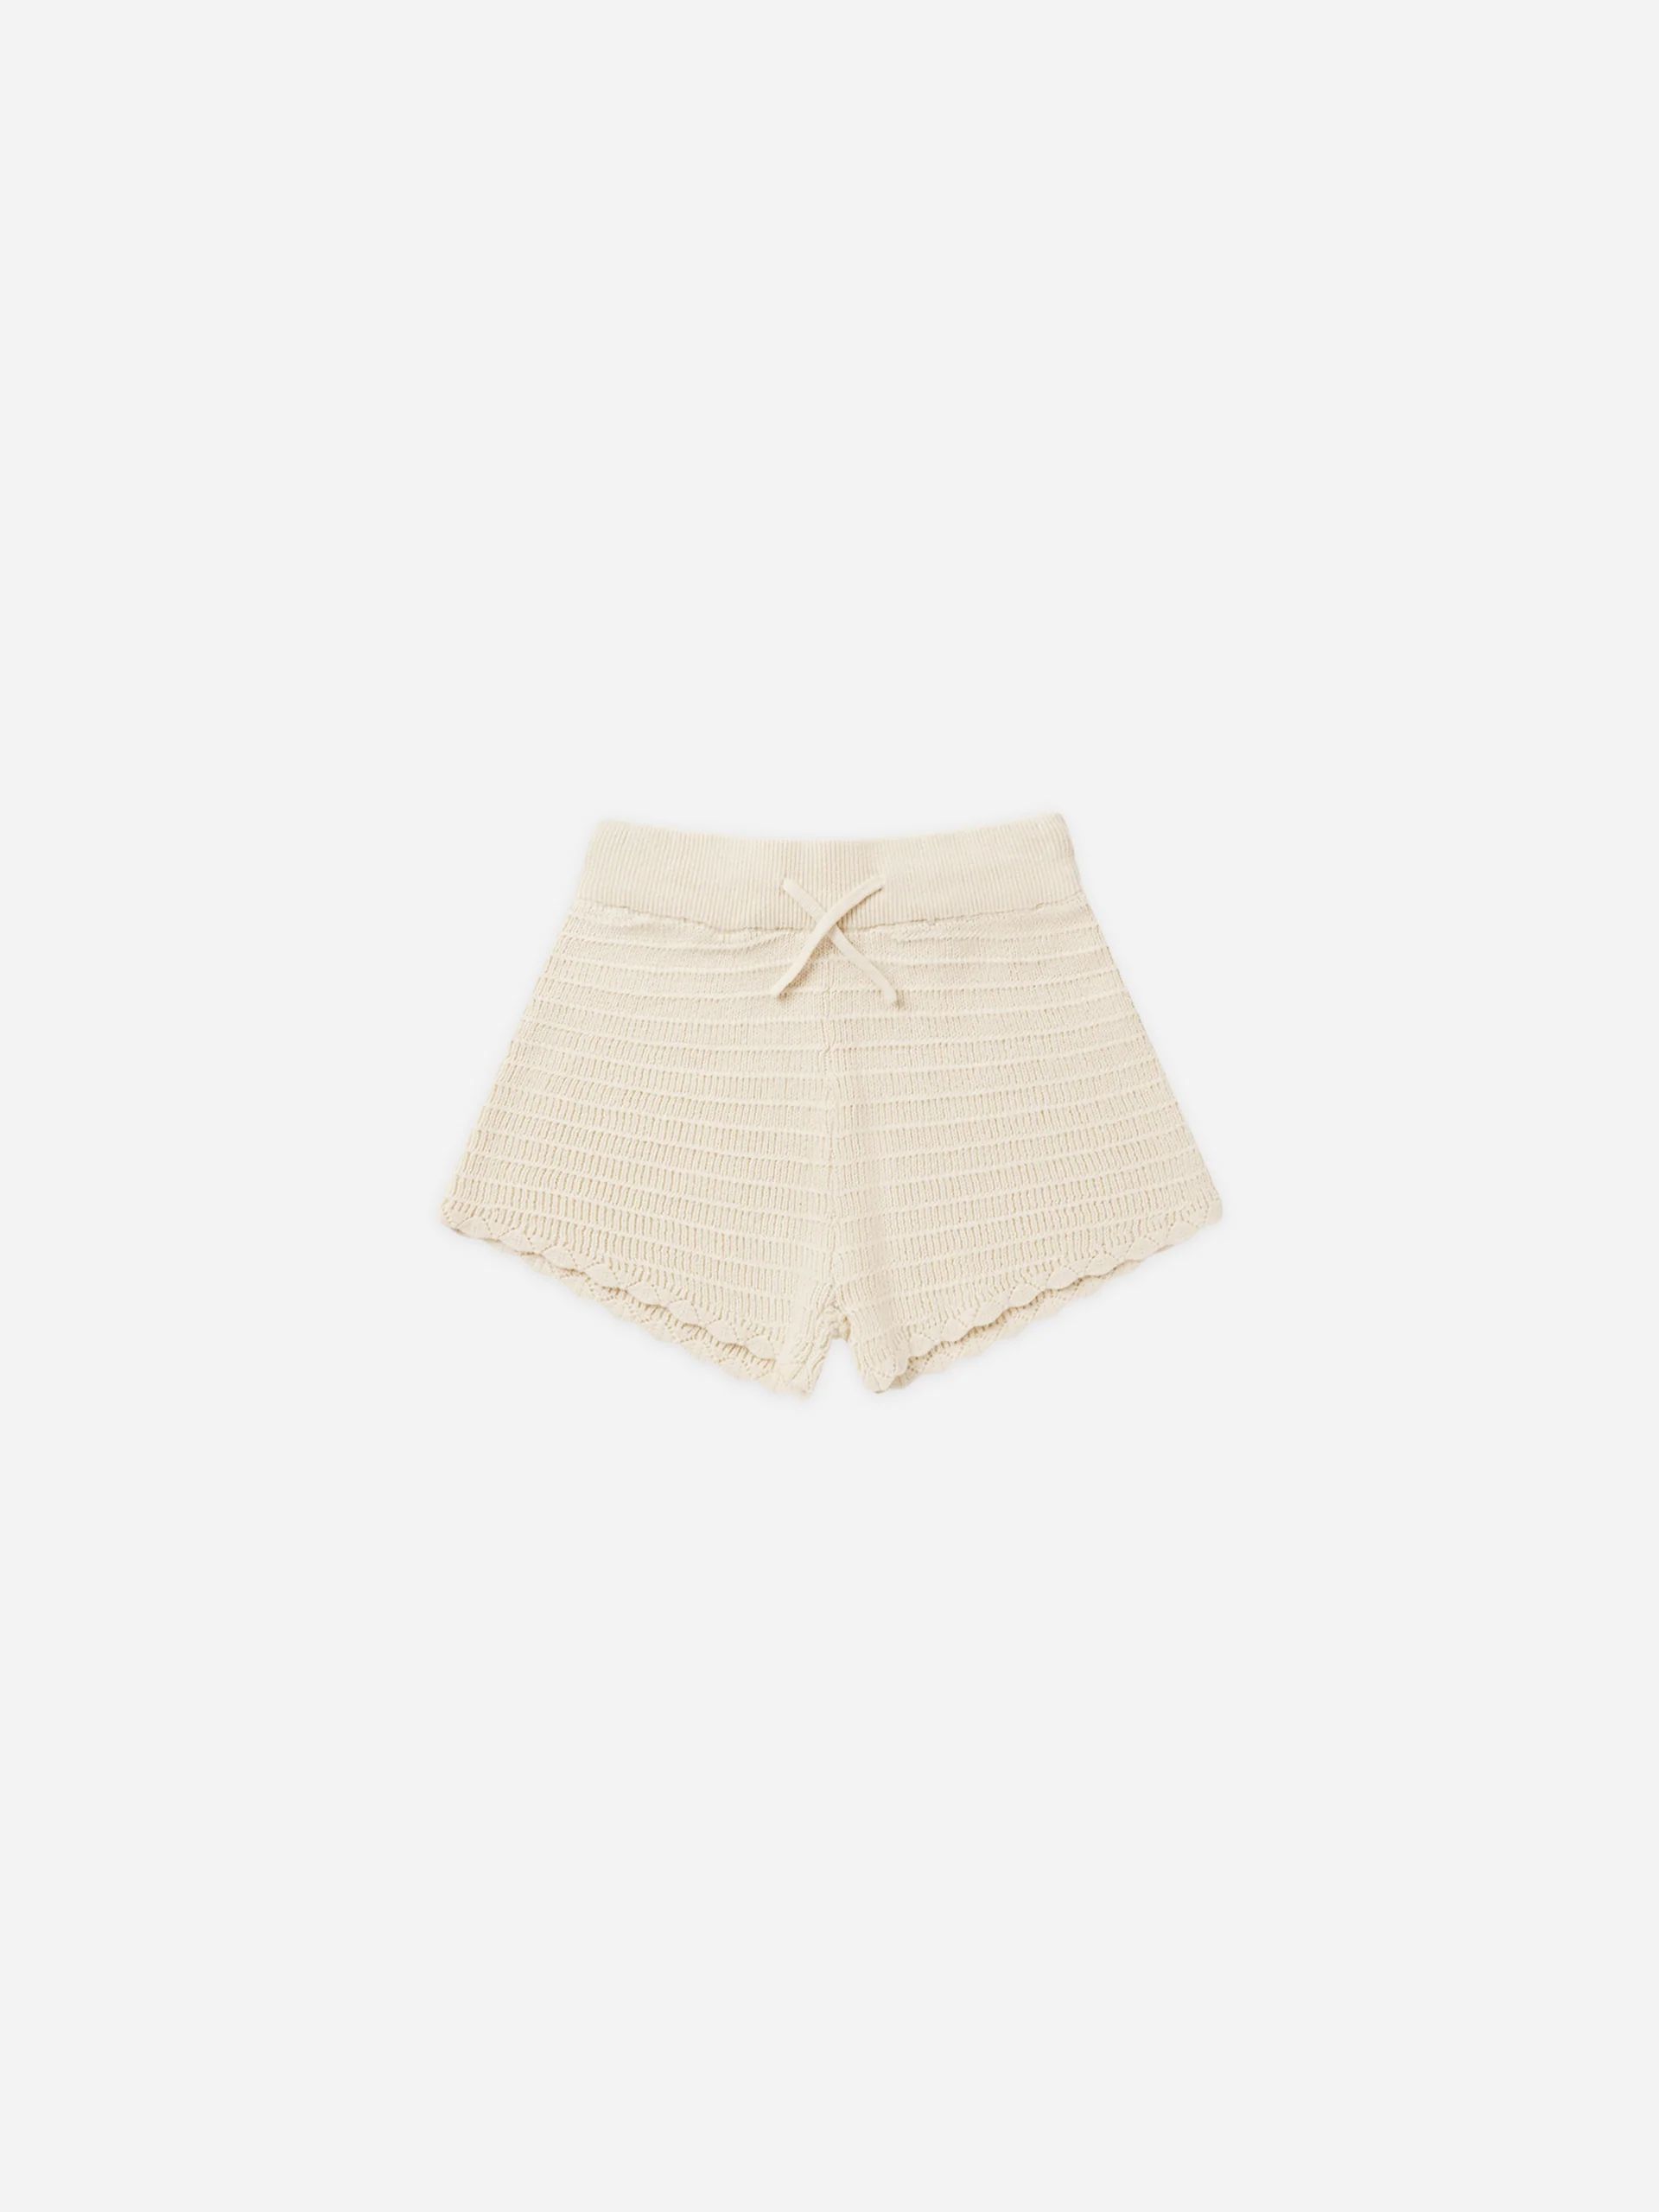 Knit Shorts || Natural | Rylee + Cru